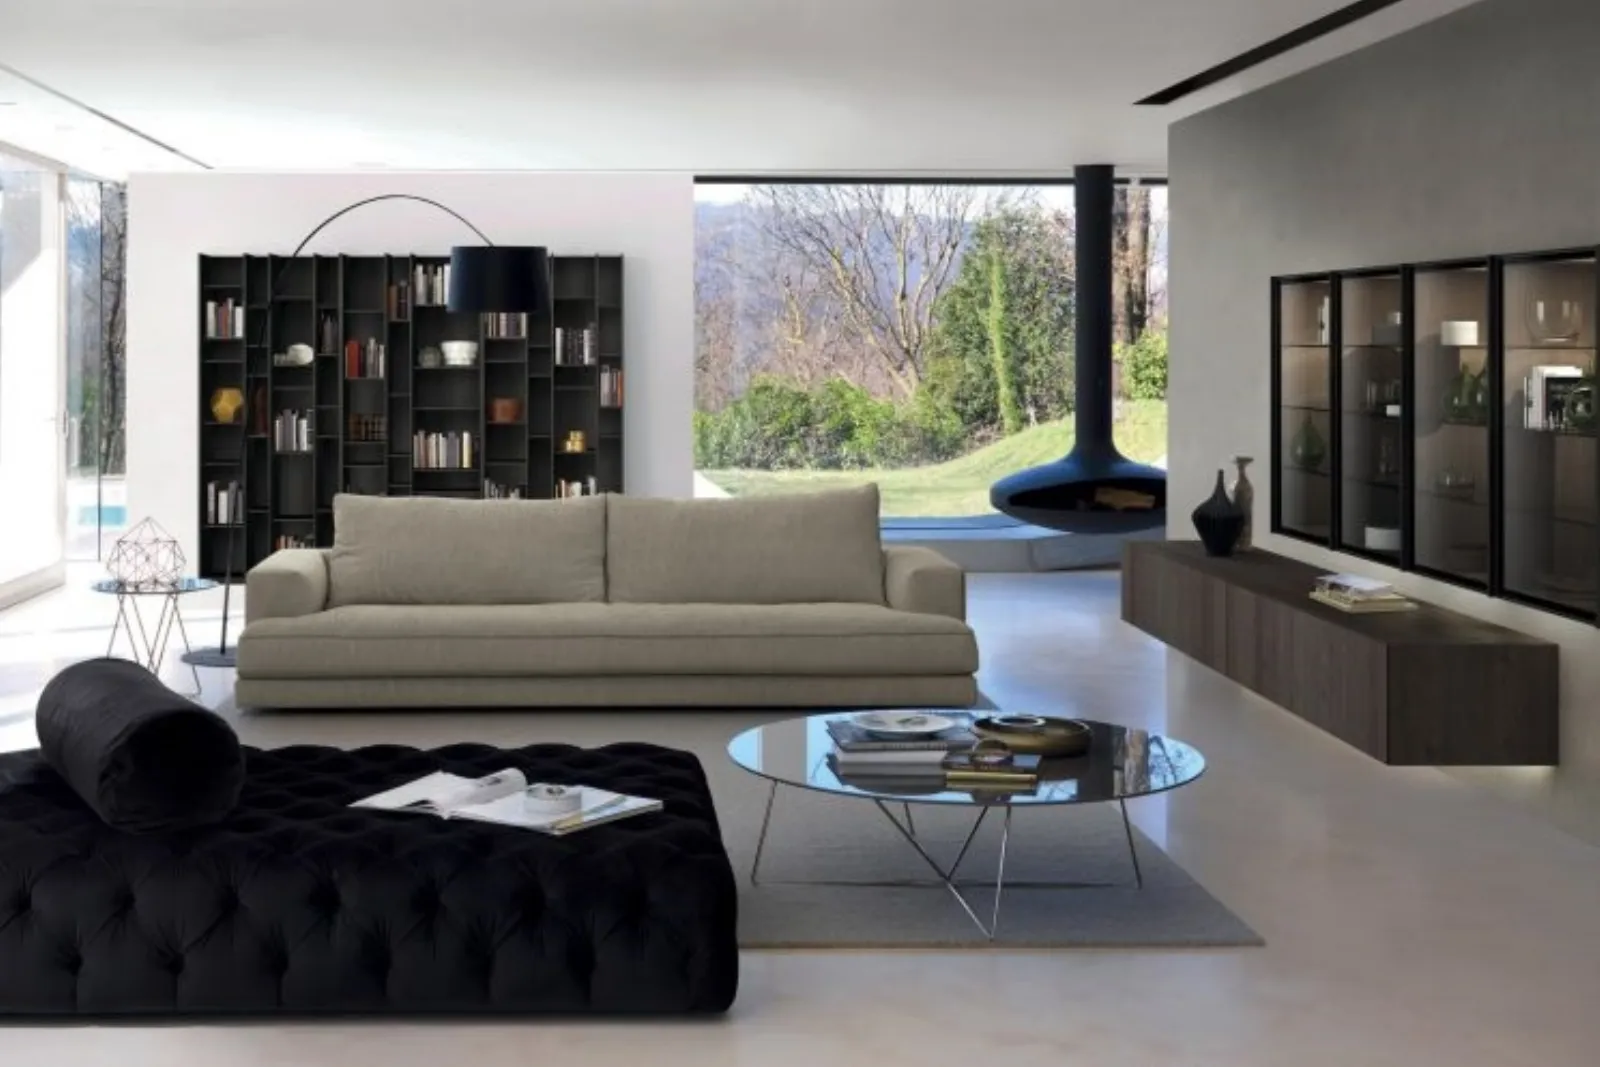 Mobili salotto creativit funzionale mobili soggiorno for Mobili x salotto